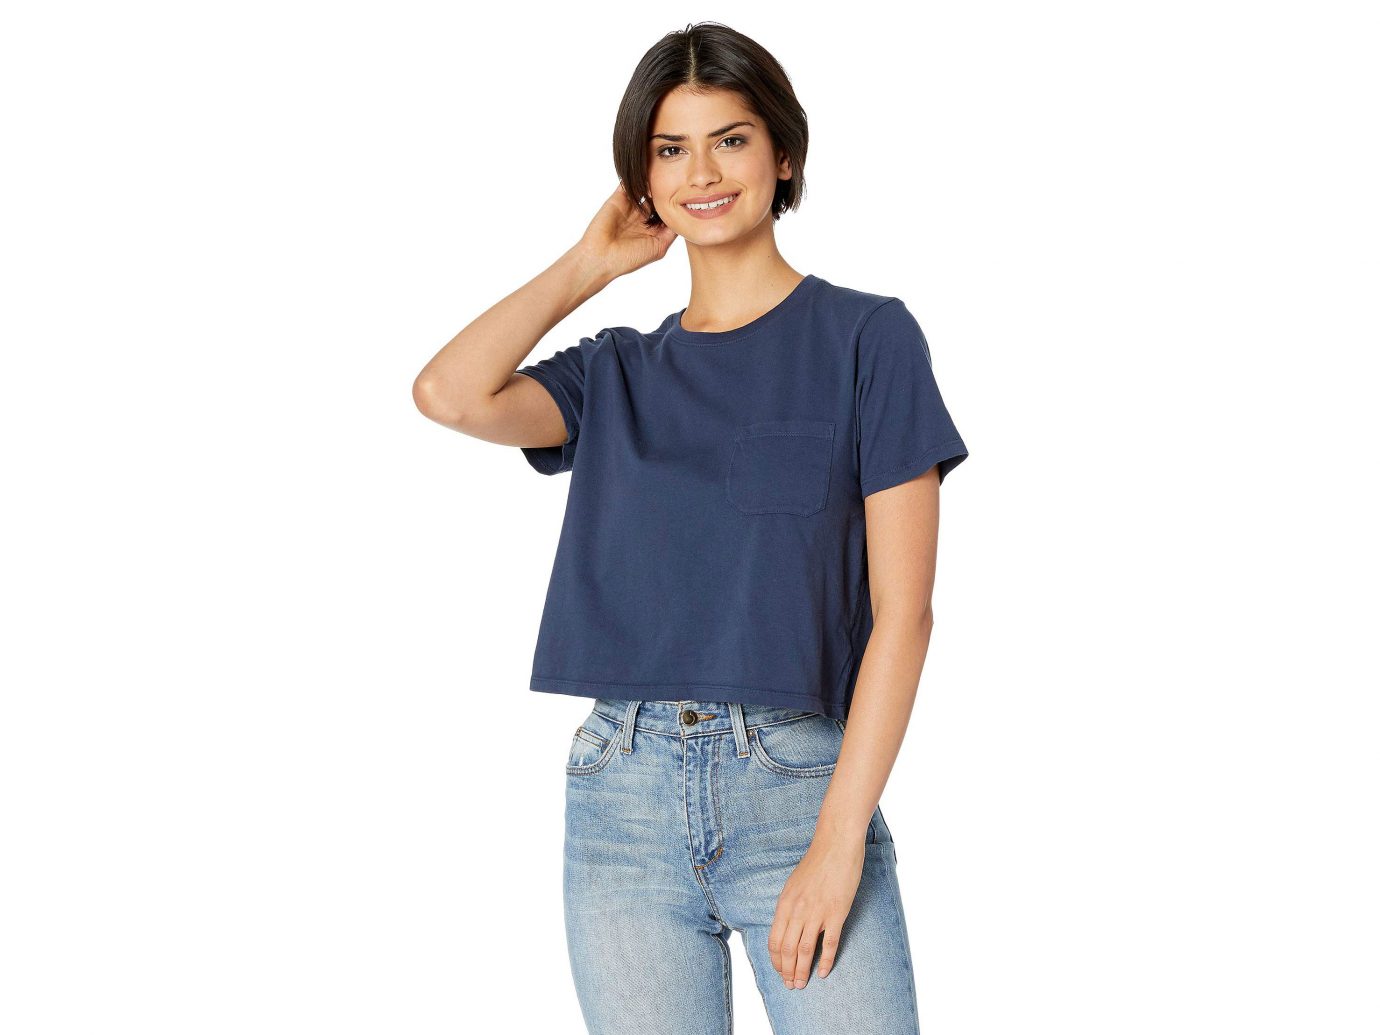 AU SELLER Women's SZ 8-24 100% Cotton Plain Basic Slim Top Tee T-Shirt T165